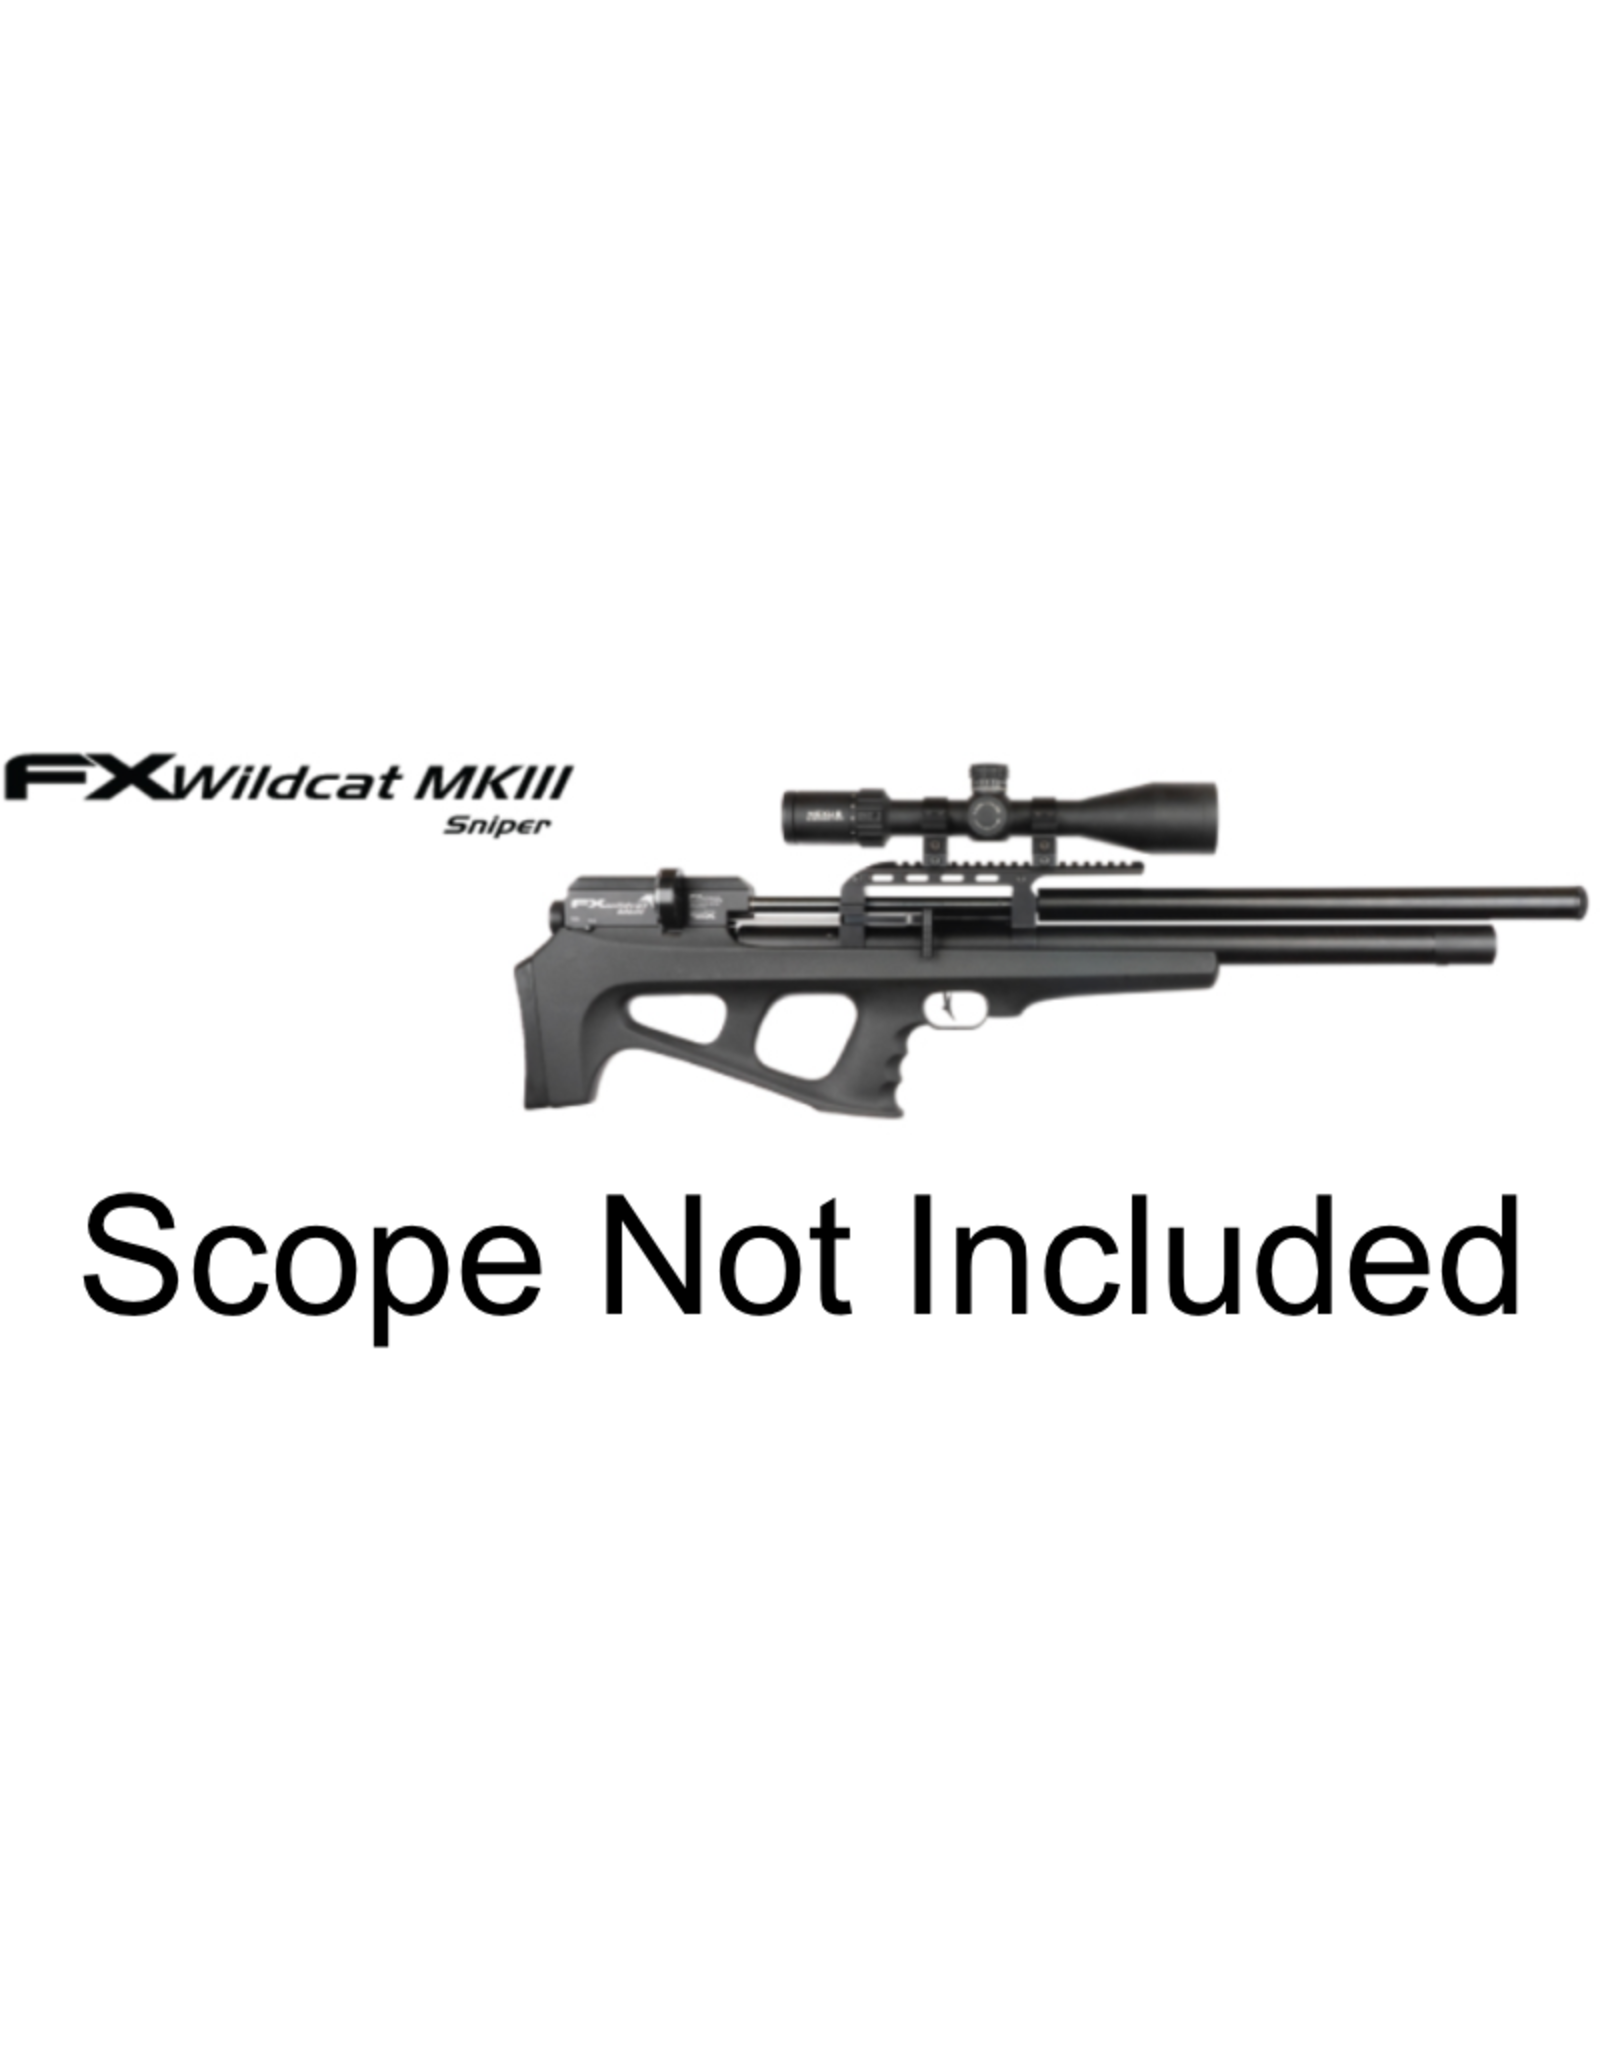 FX Airguns FX Wildcat MKIII Sniper, Synthetic - 0.25 caliber - - 700MM BARREL